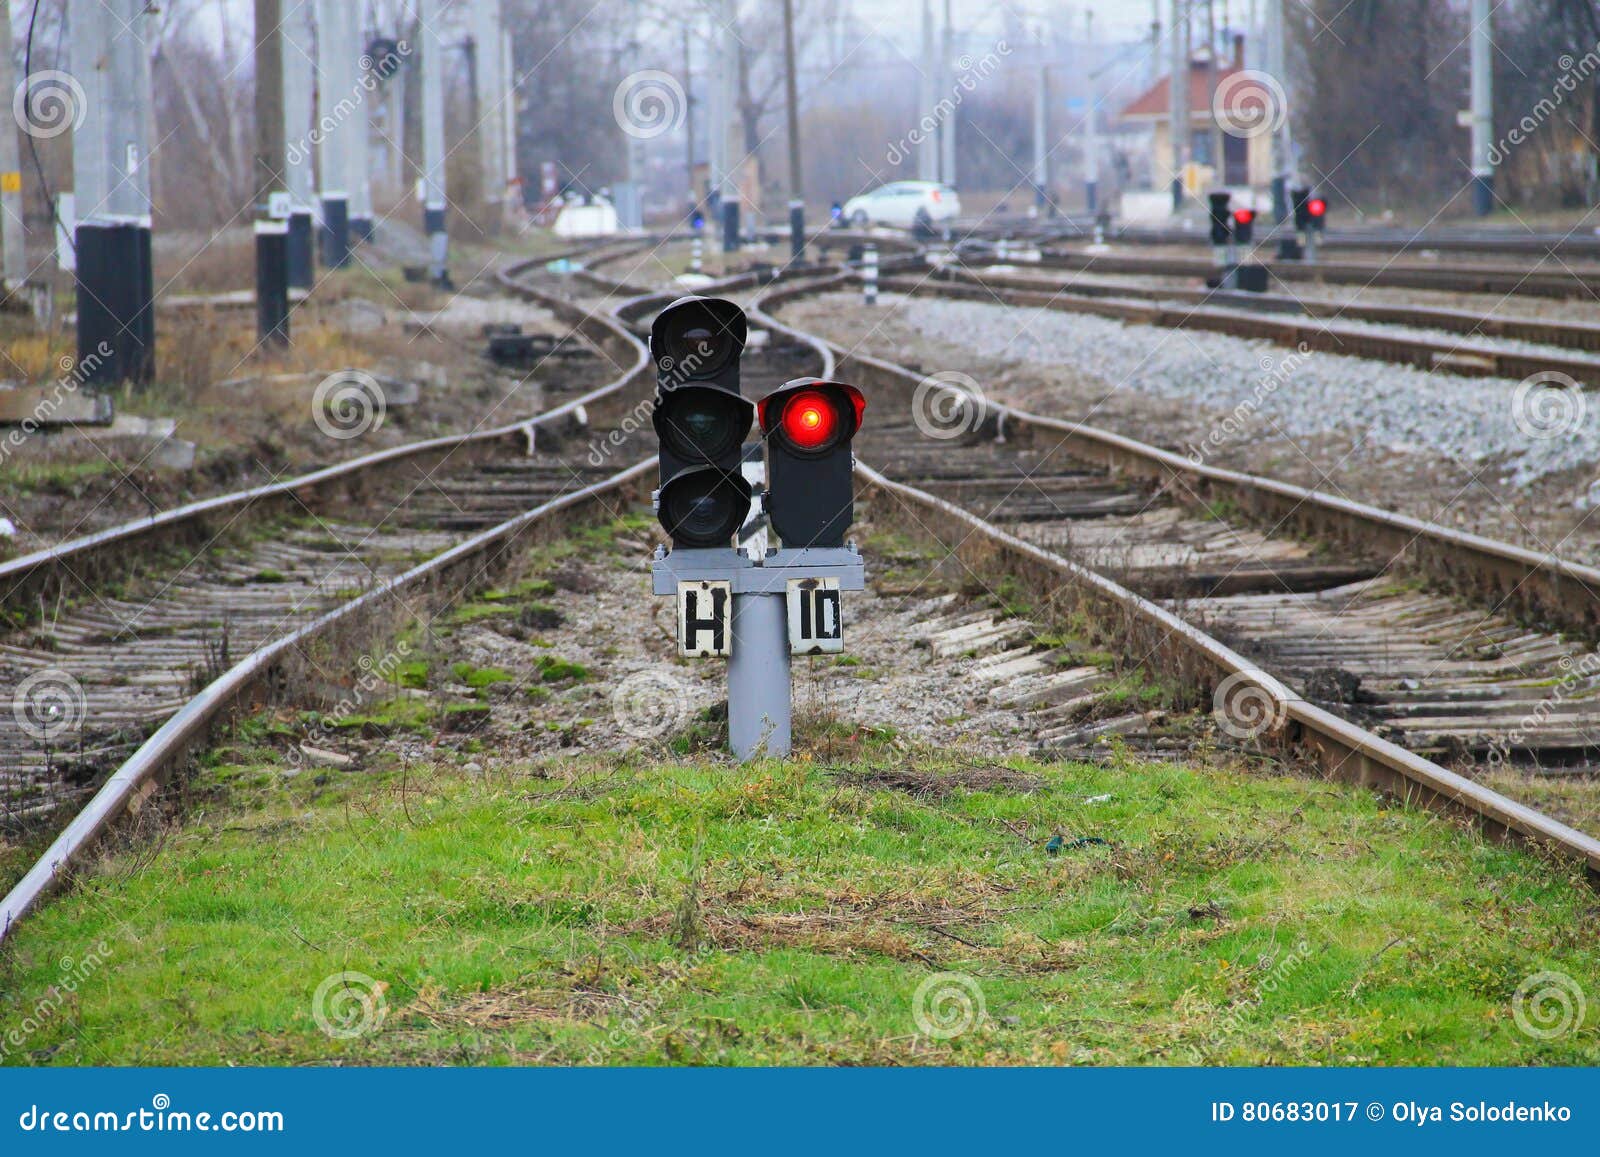 Включи приключения семафора. Карликовый семафор. Семафор железная дорога. Семафор Железнодорожный РЖД. Красный сигнал семафора.